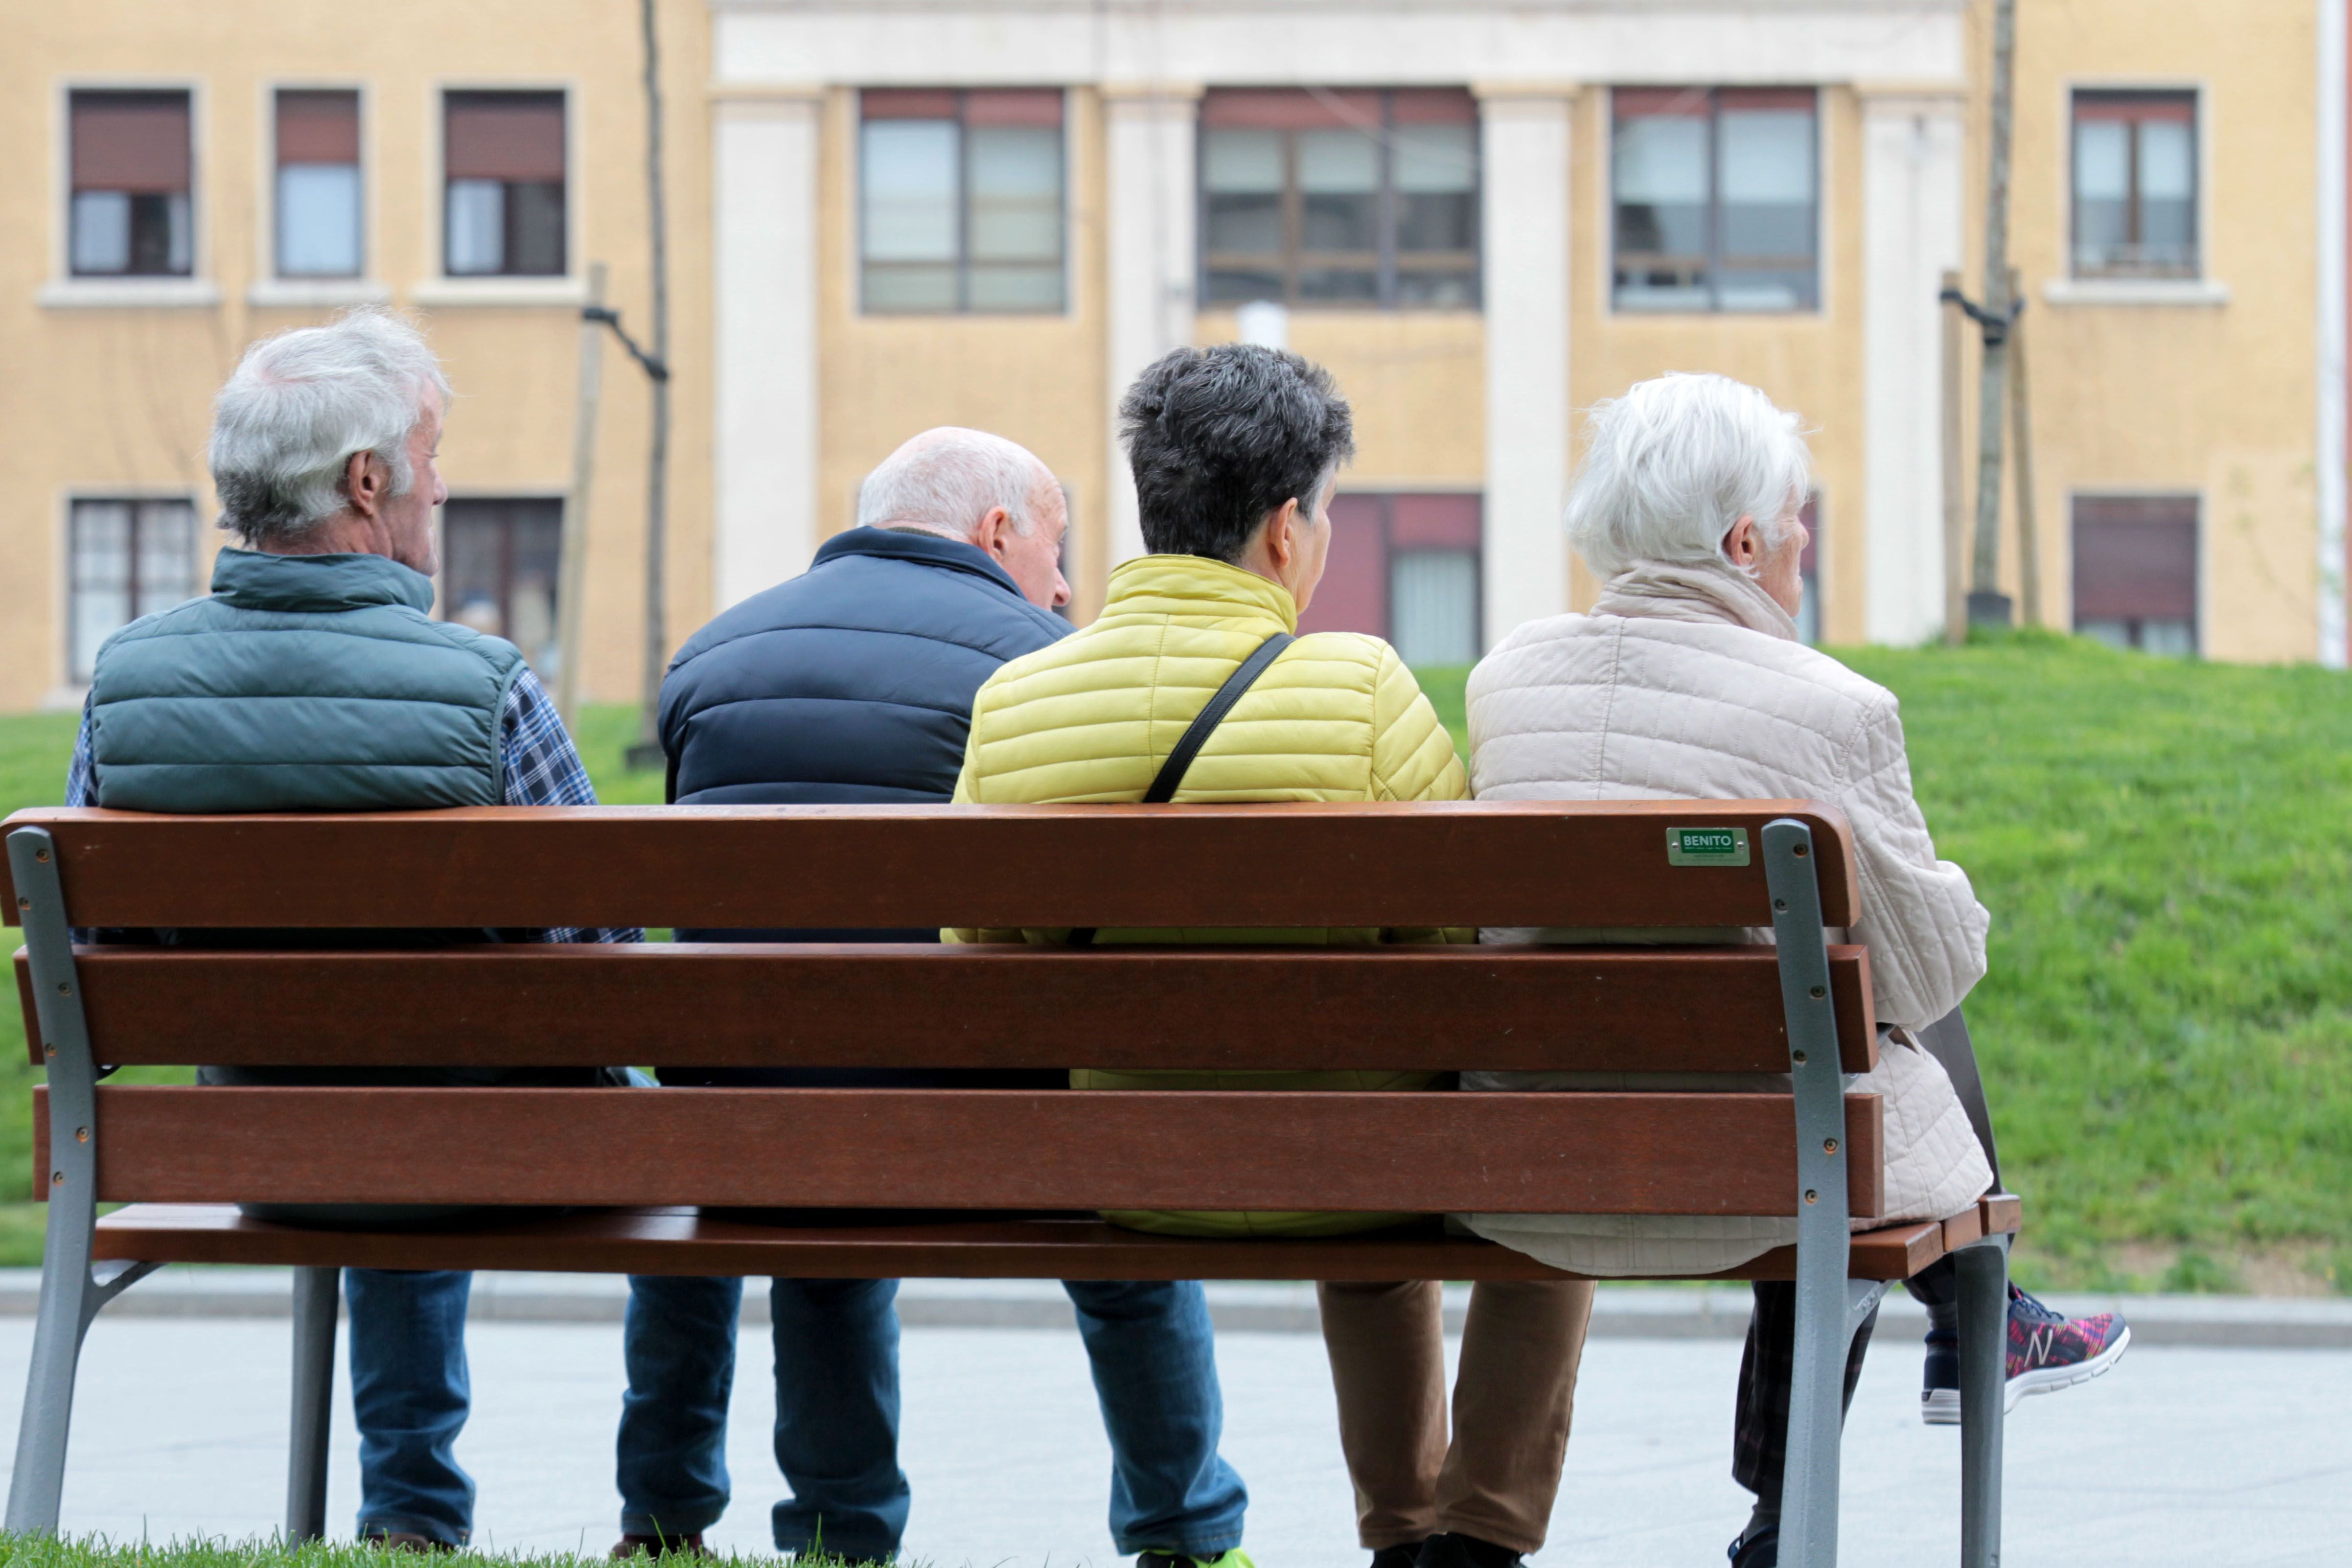 La pensión media ya alcanza en España los 1.252 euros al mes y la de jubilación, 1.438